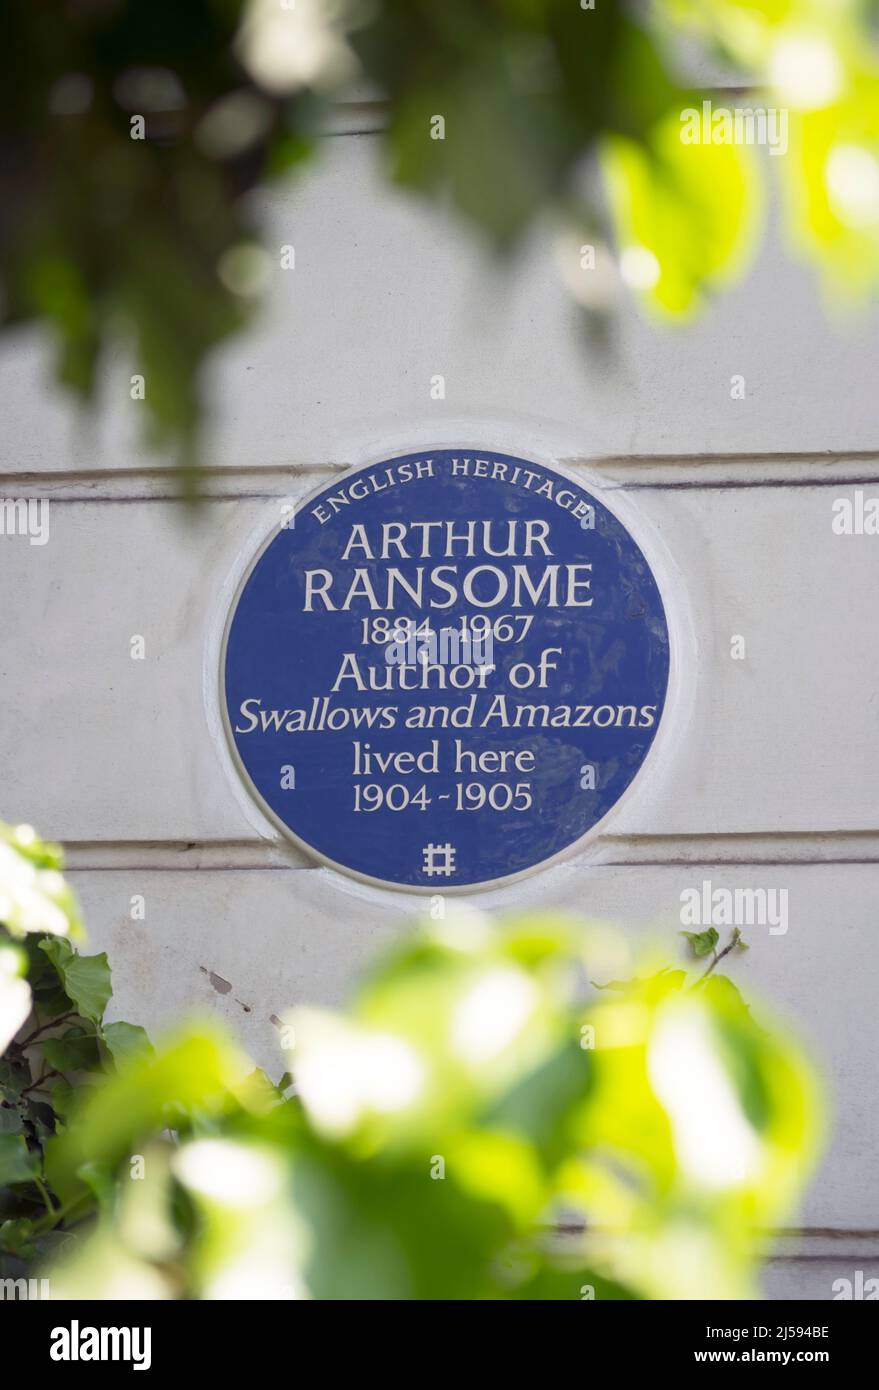 placa azul de herencia inglesa que marca un hogar del escritor arthur ransome, autor de golondrinas y amazonas, londres, inglaterra Foto de stock